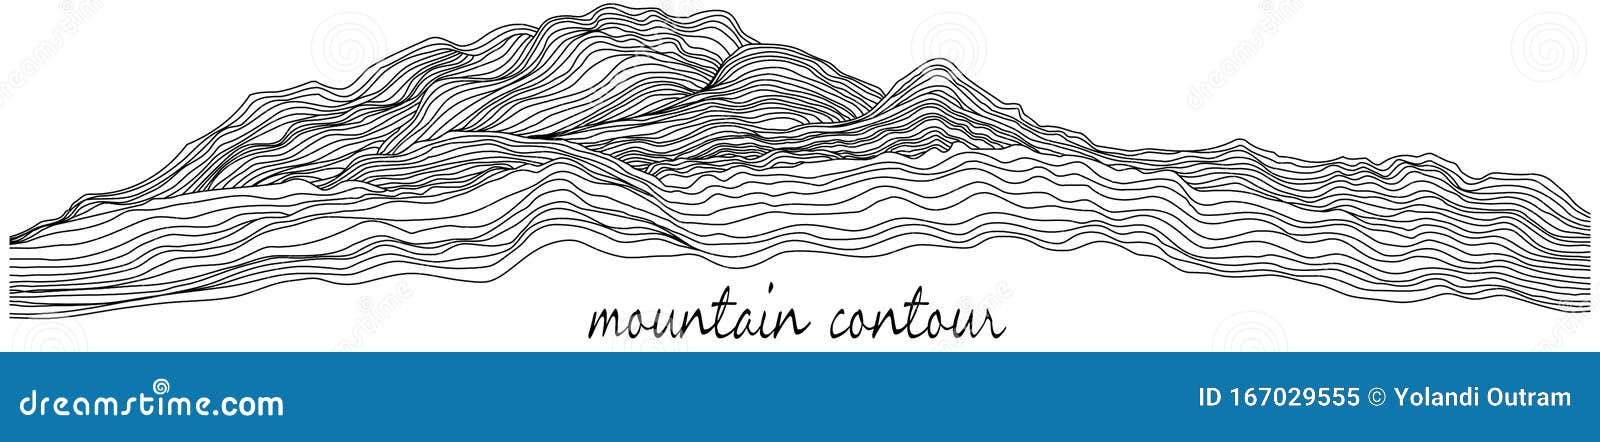 mountain contour line art   on white background